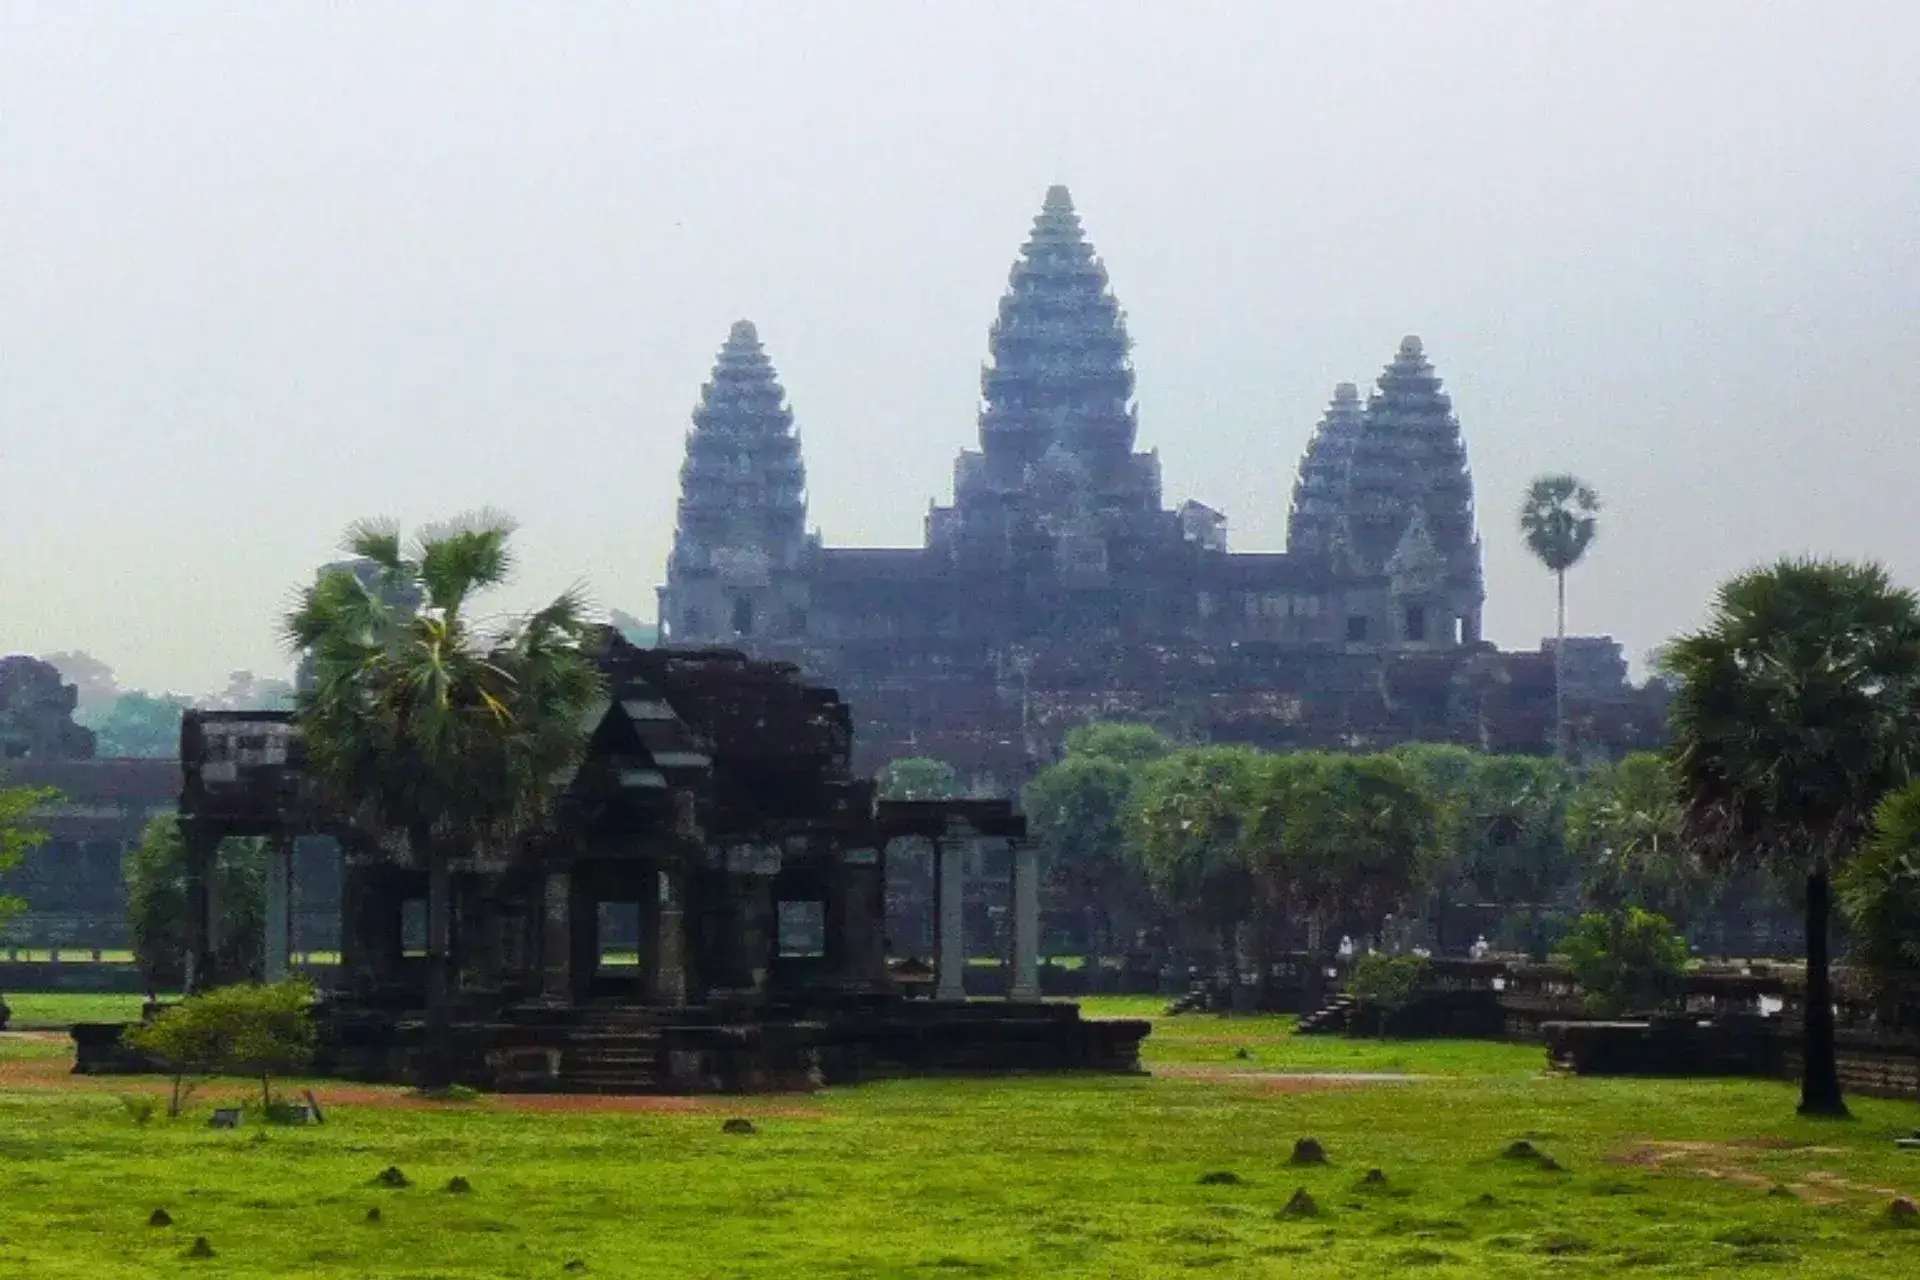 Templo en Angkor Wat con la silueta de dos torres al fondo y vegetación en primer plano